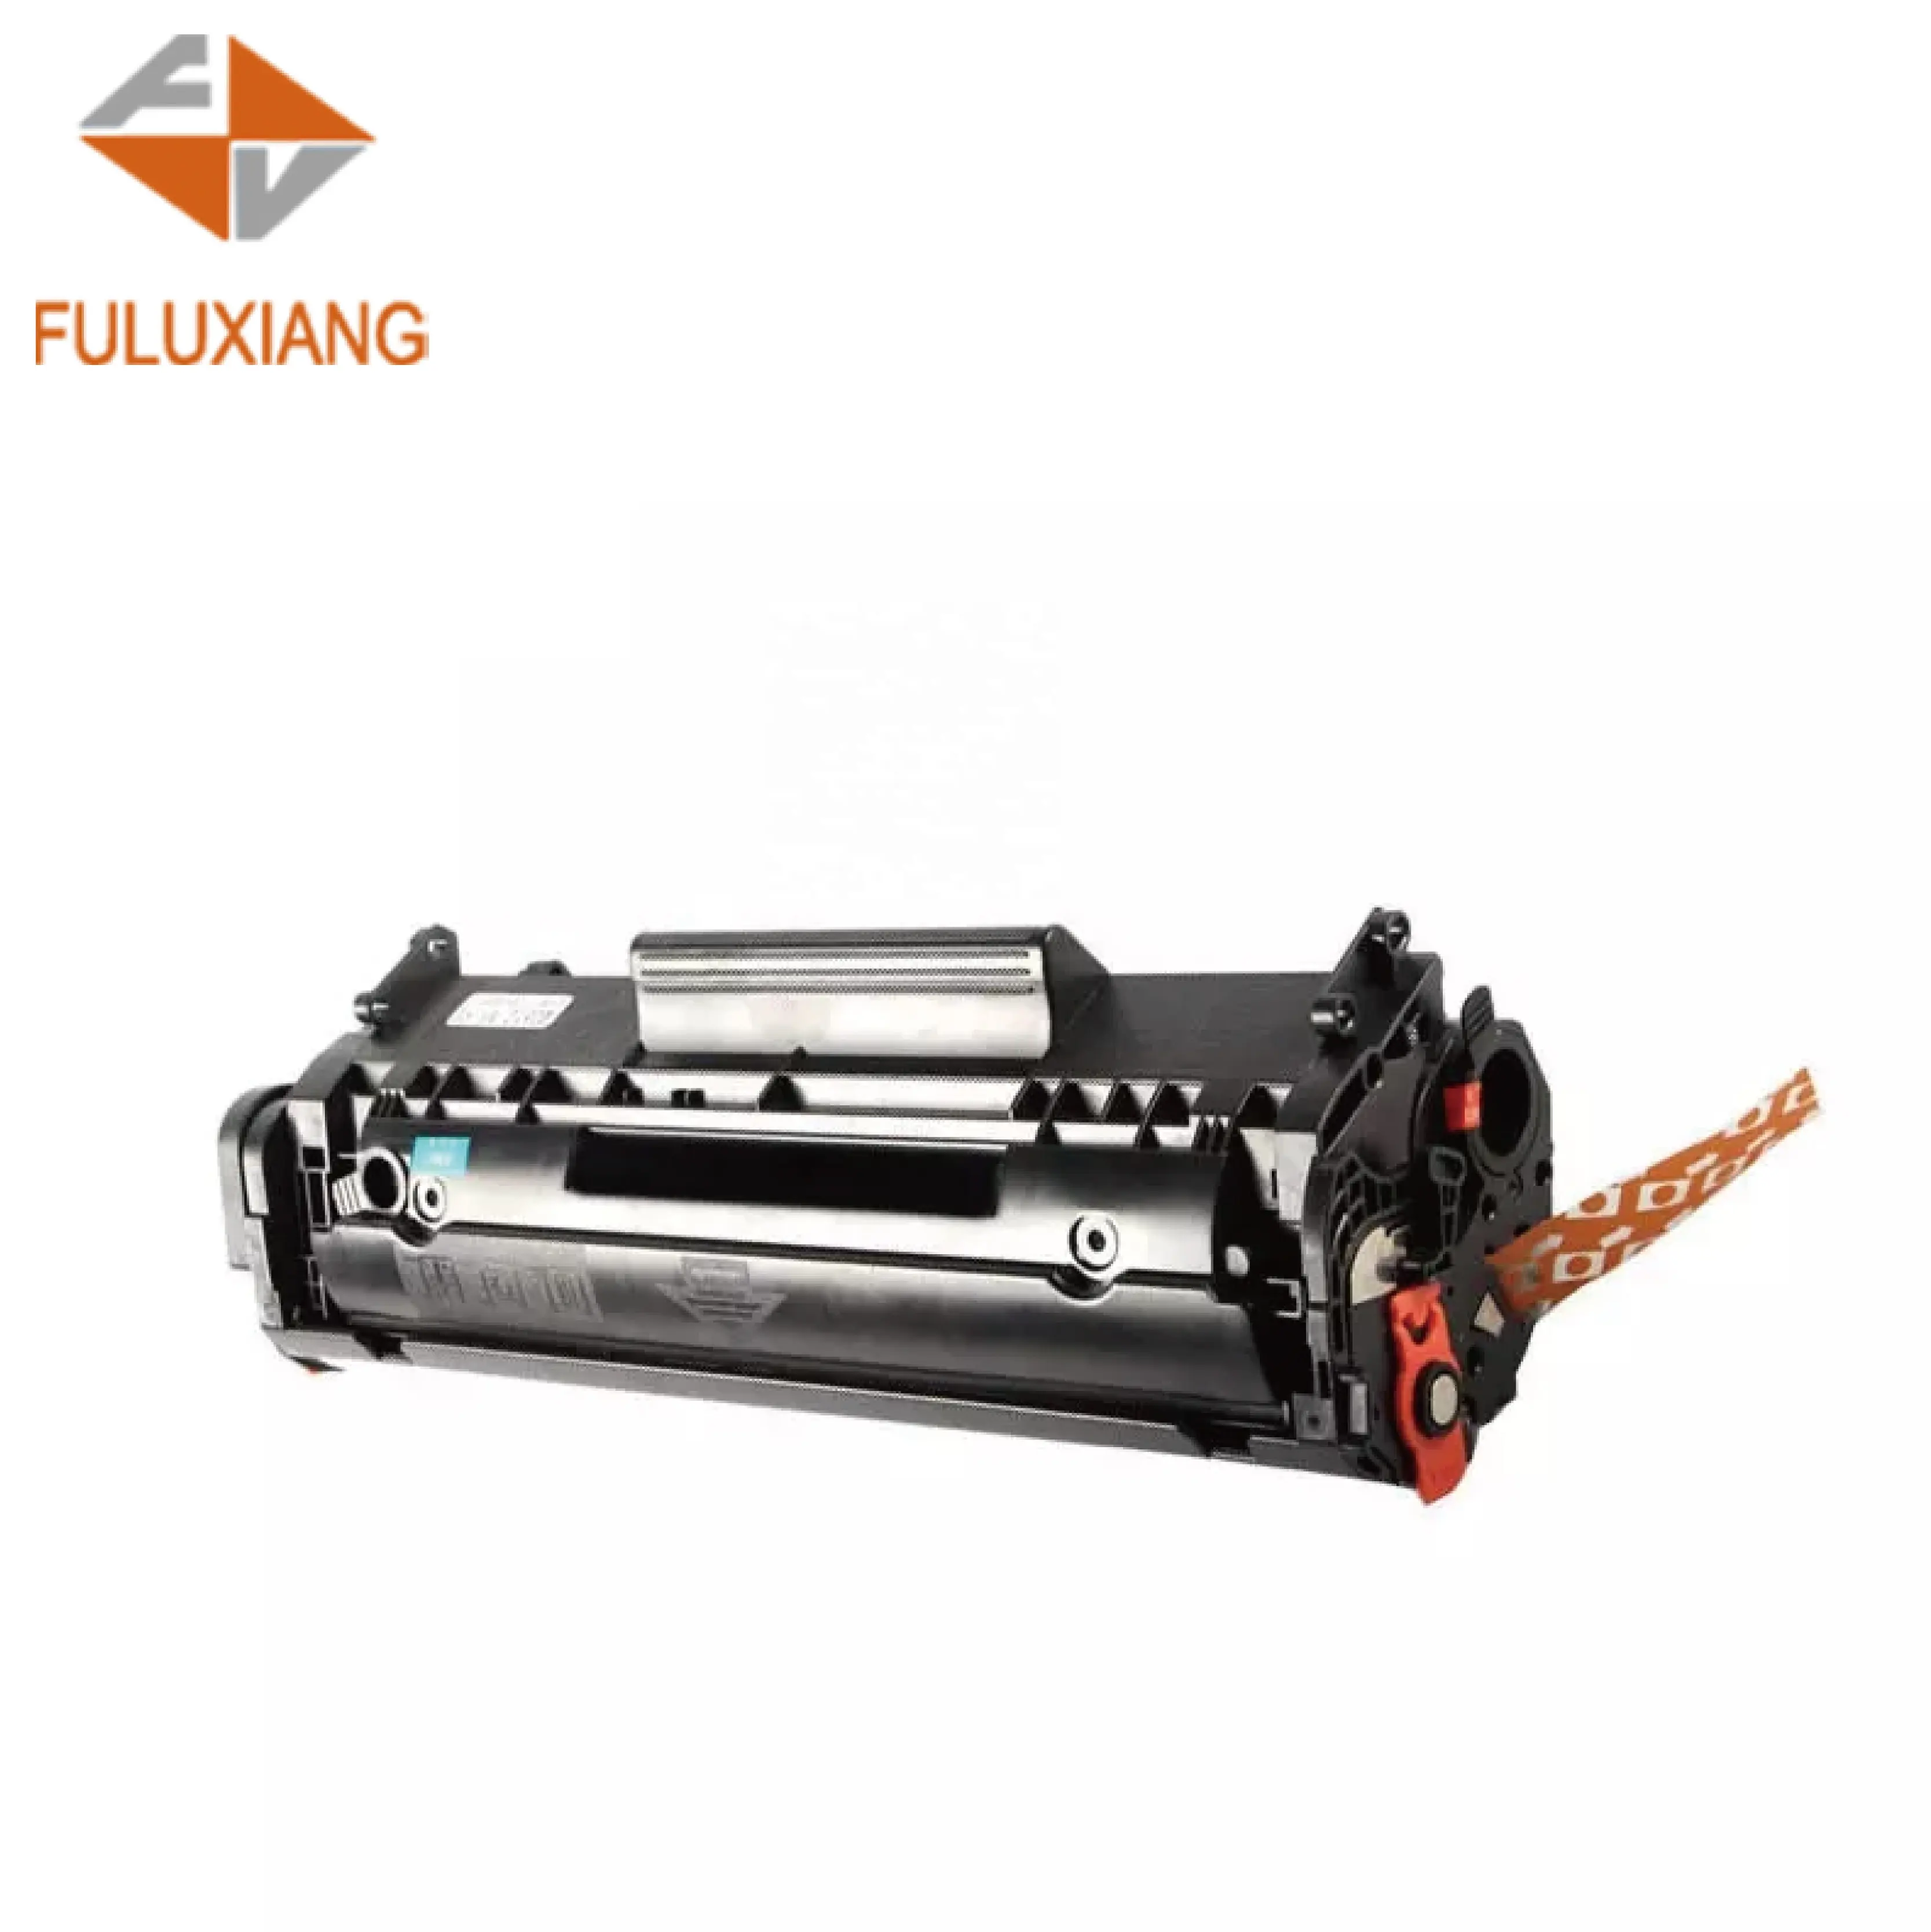 Fuluxiang Совместимость CRG303 FX-9 CRG103 303 703 картридж с тонером для принтера Canon LBP2900/3000/1112/1121